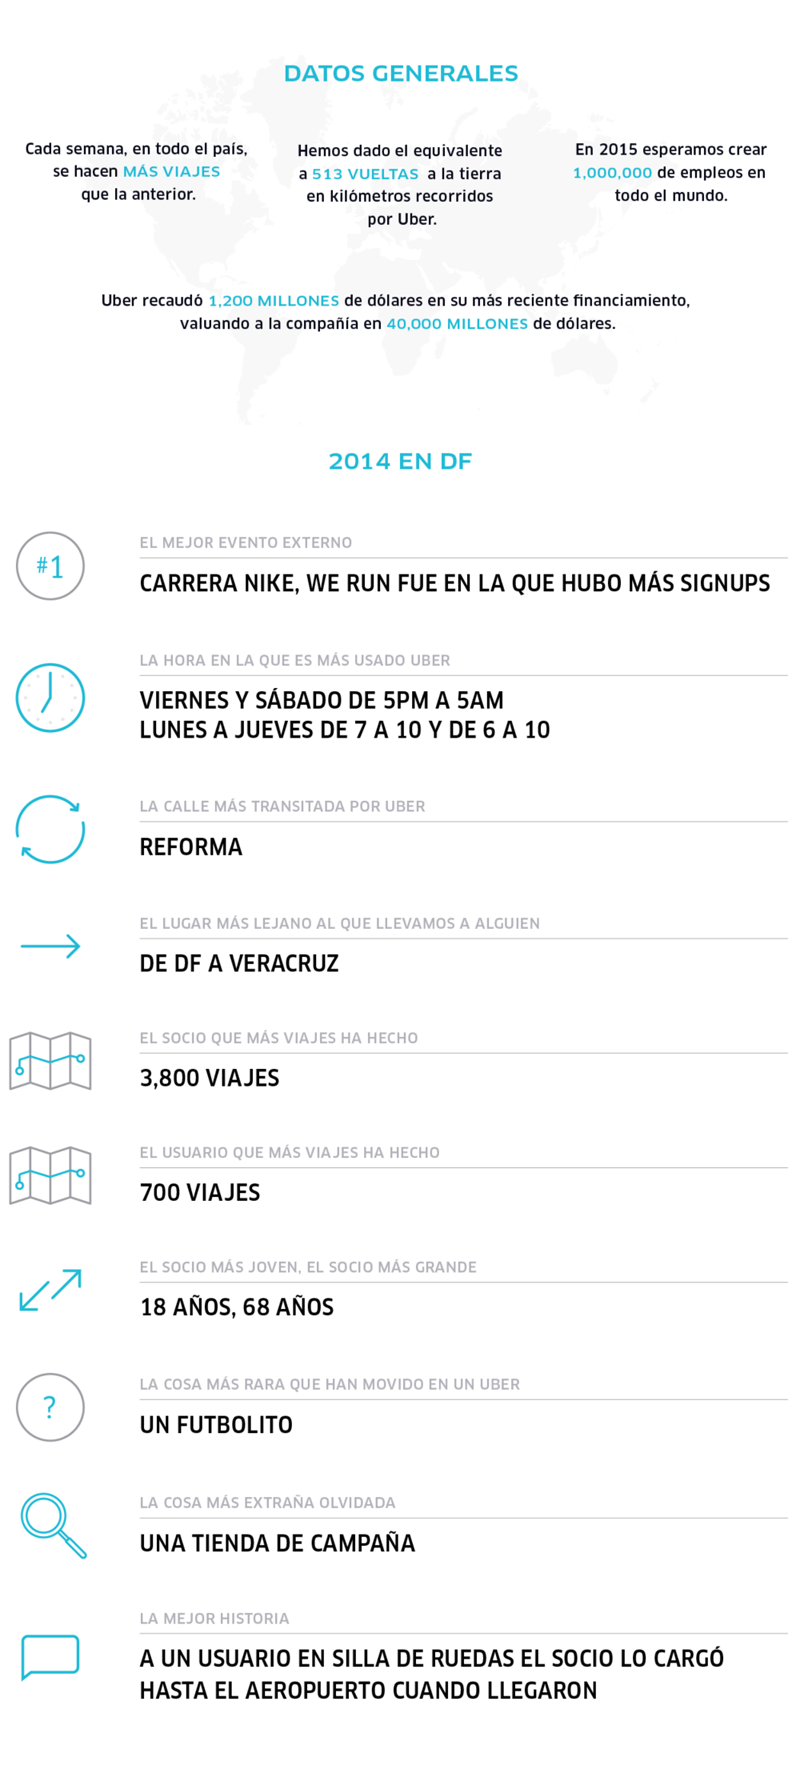 Uber en México | Infografía